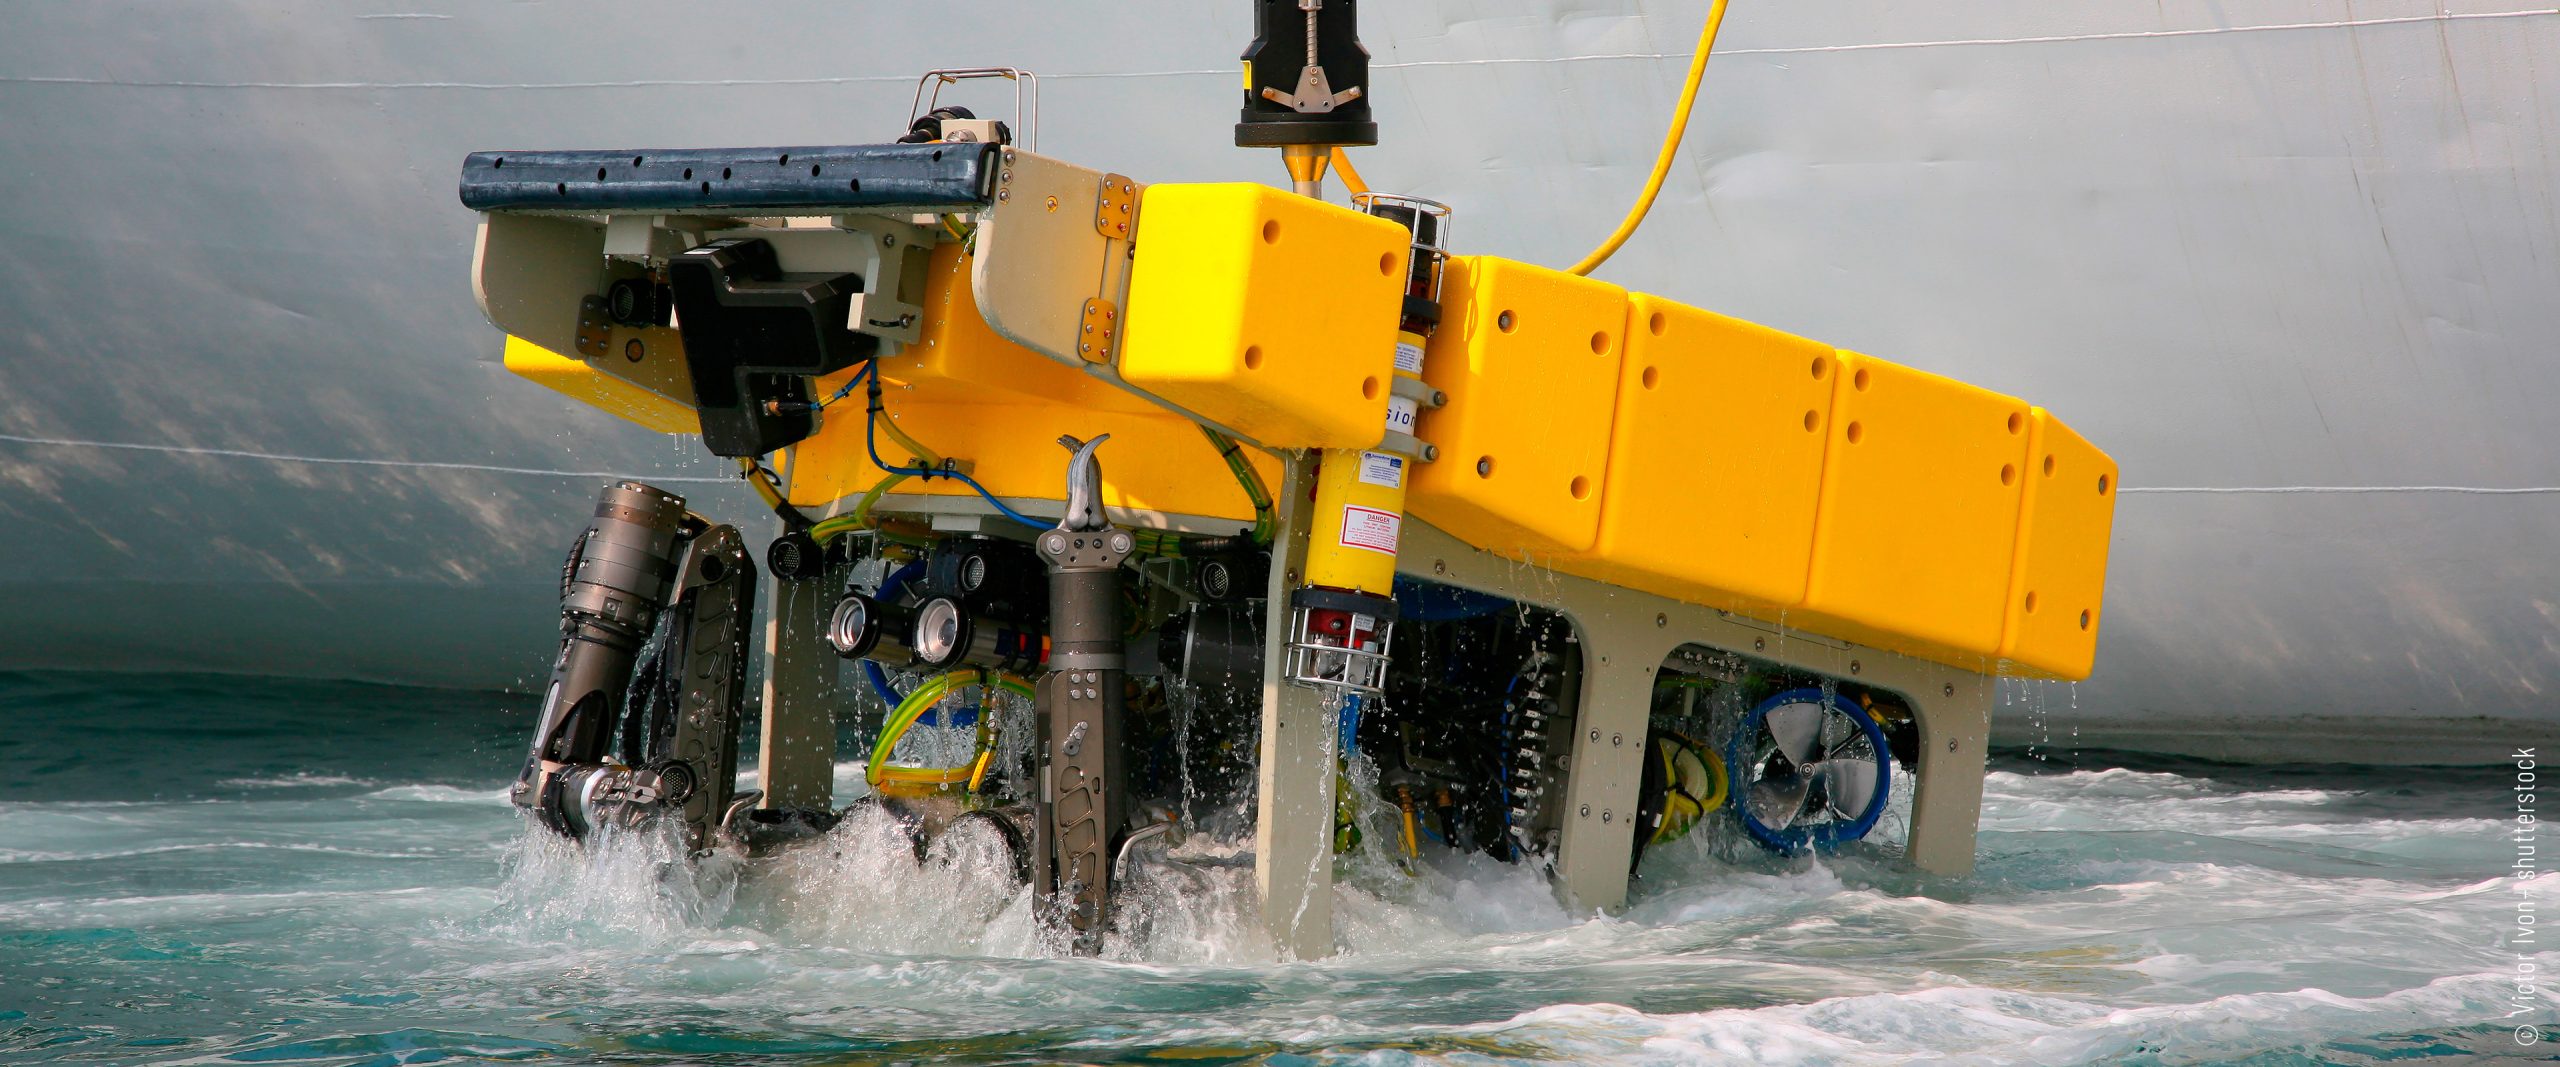 Studie zu Offshore-Testzentrum Meerestechnik fertiggestellt